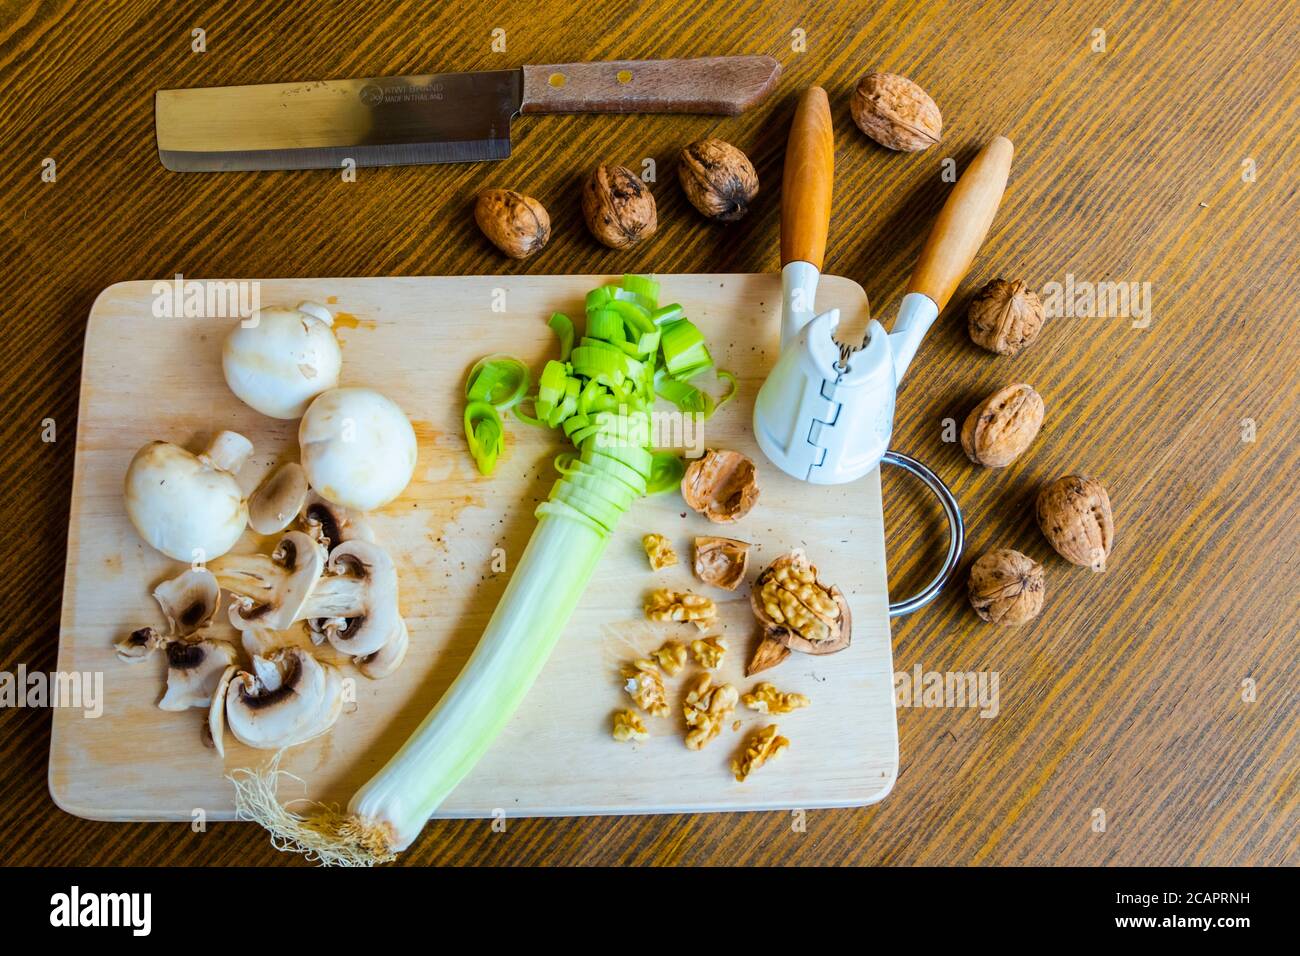 Mesa con productos dietéticos vegetarianos incluyendo nueces, hongos y puerro Foto de stock